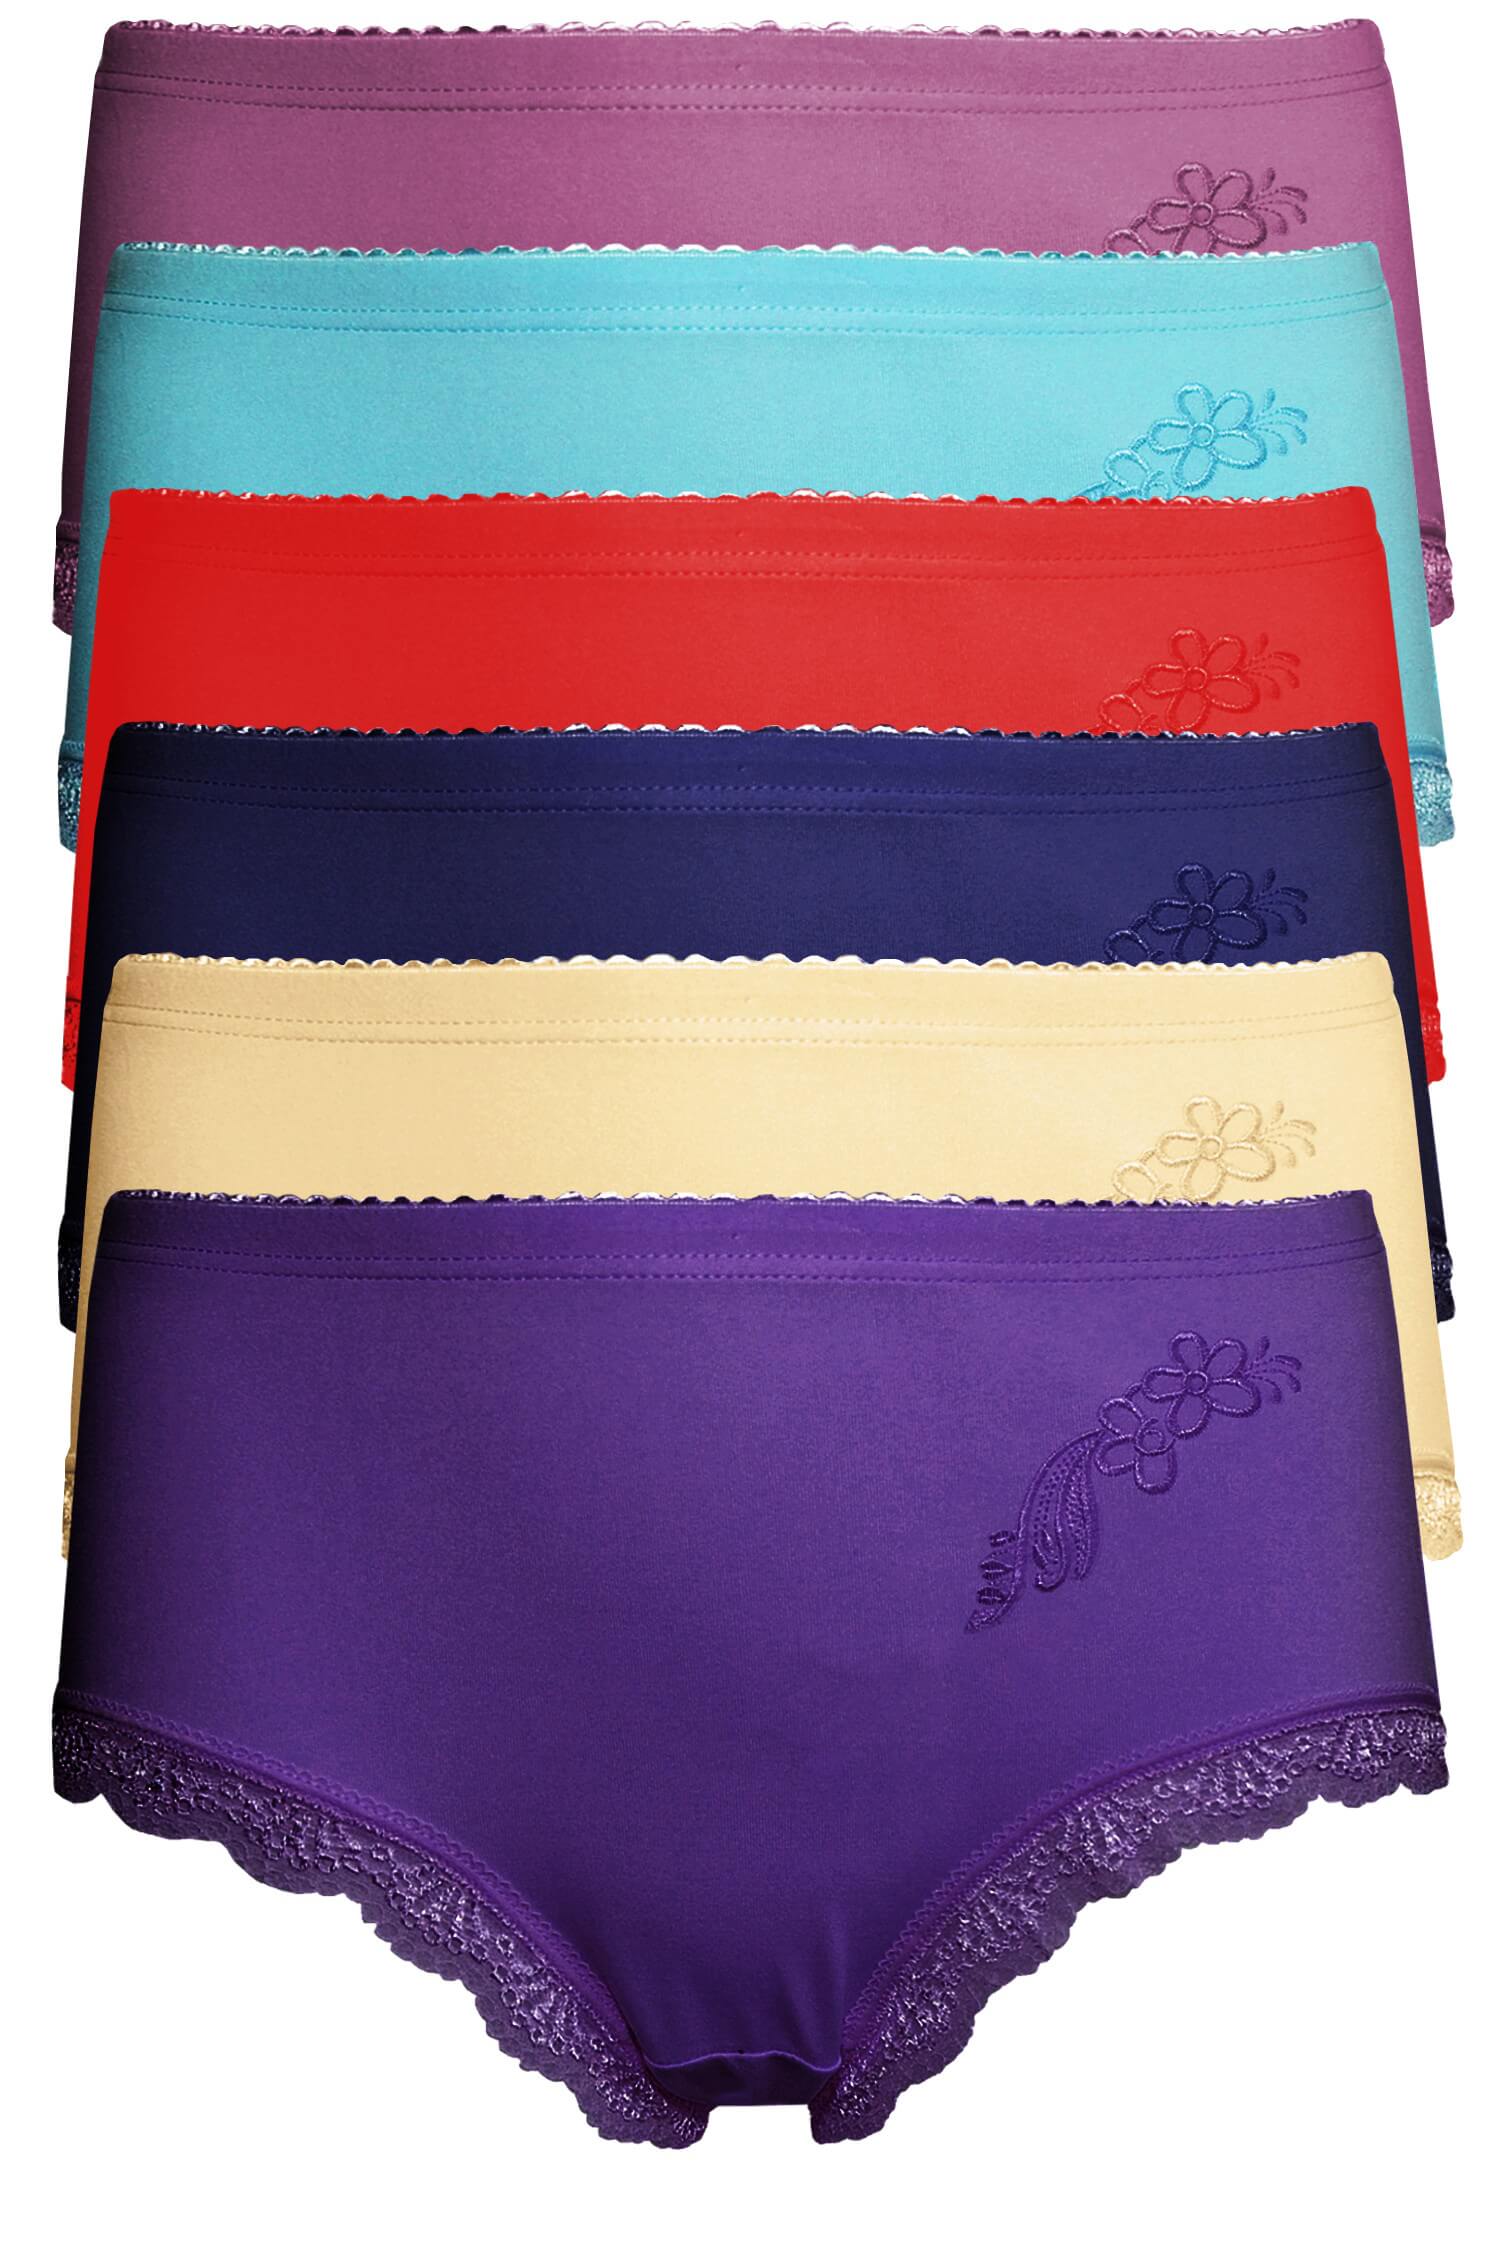 Danča bavlněné kalhotky s krajkou 9009 - 3bal XL vícebarevná